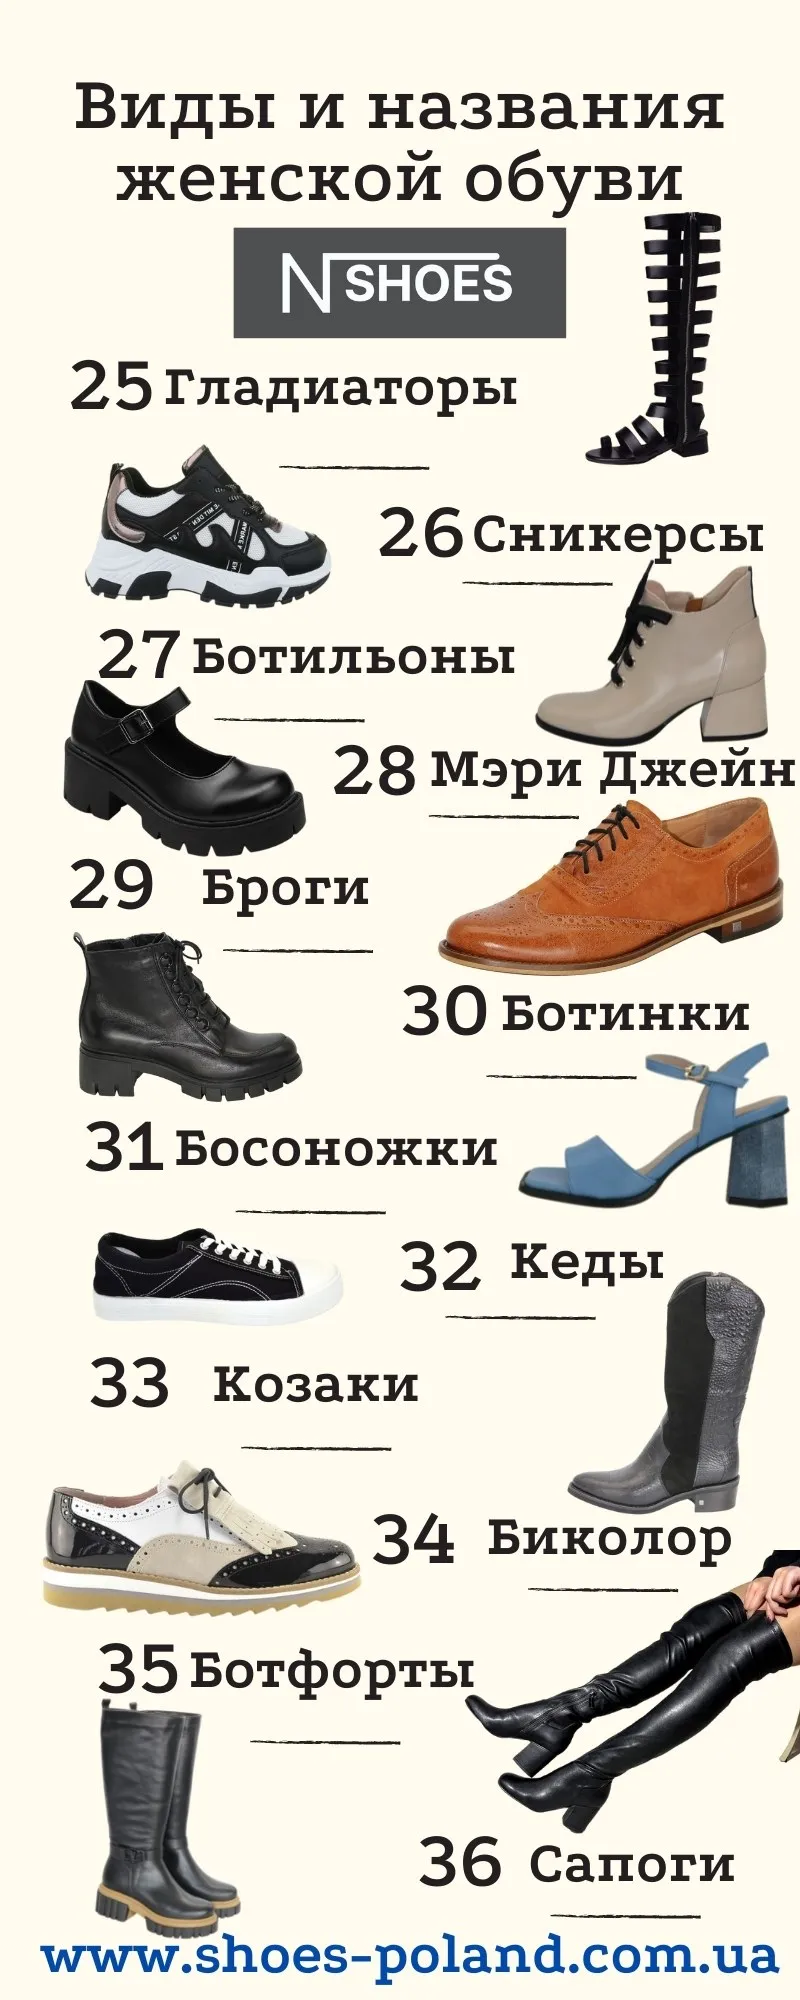 Название летней женской обуви. Разновидность женской обуви. Женская обувь названия моделей. Типы женской обуви. Название ботинок женских.